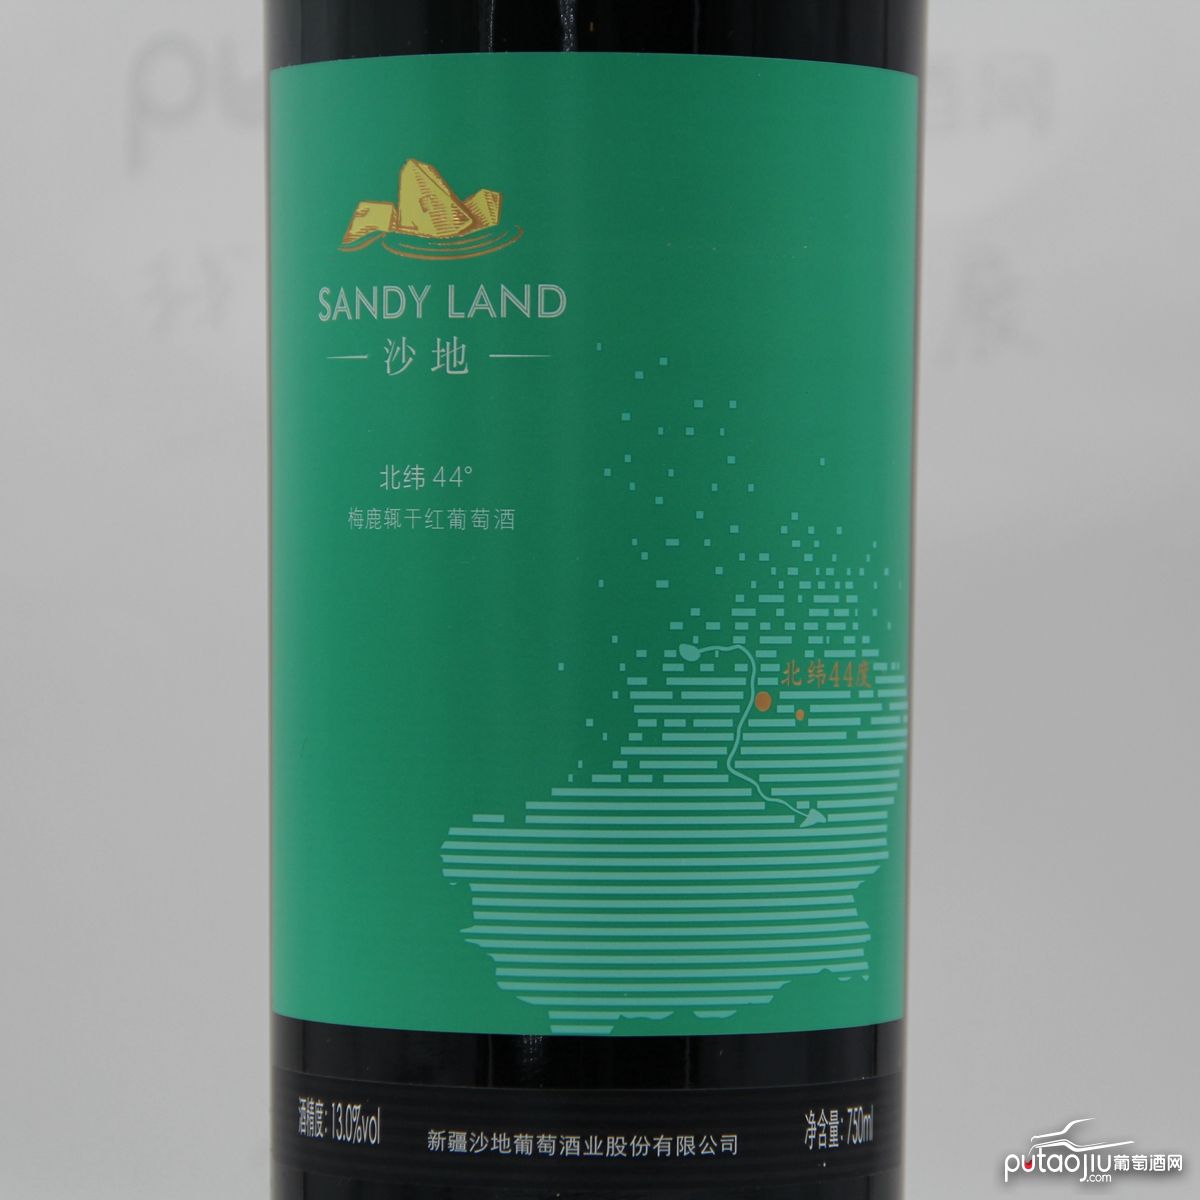 中国新疆产区沙地酒庄 梅鹿辄merlot北纬44°干红葡萄酒